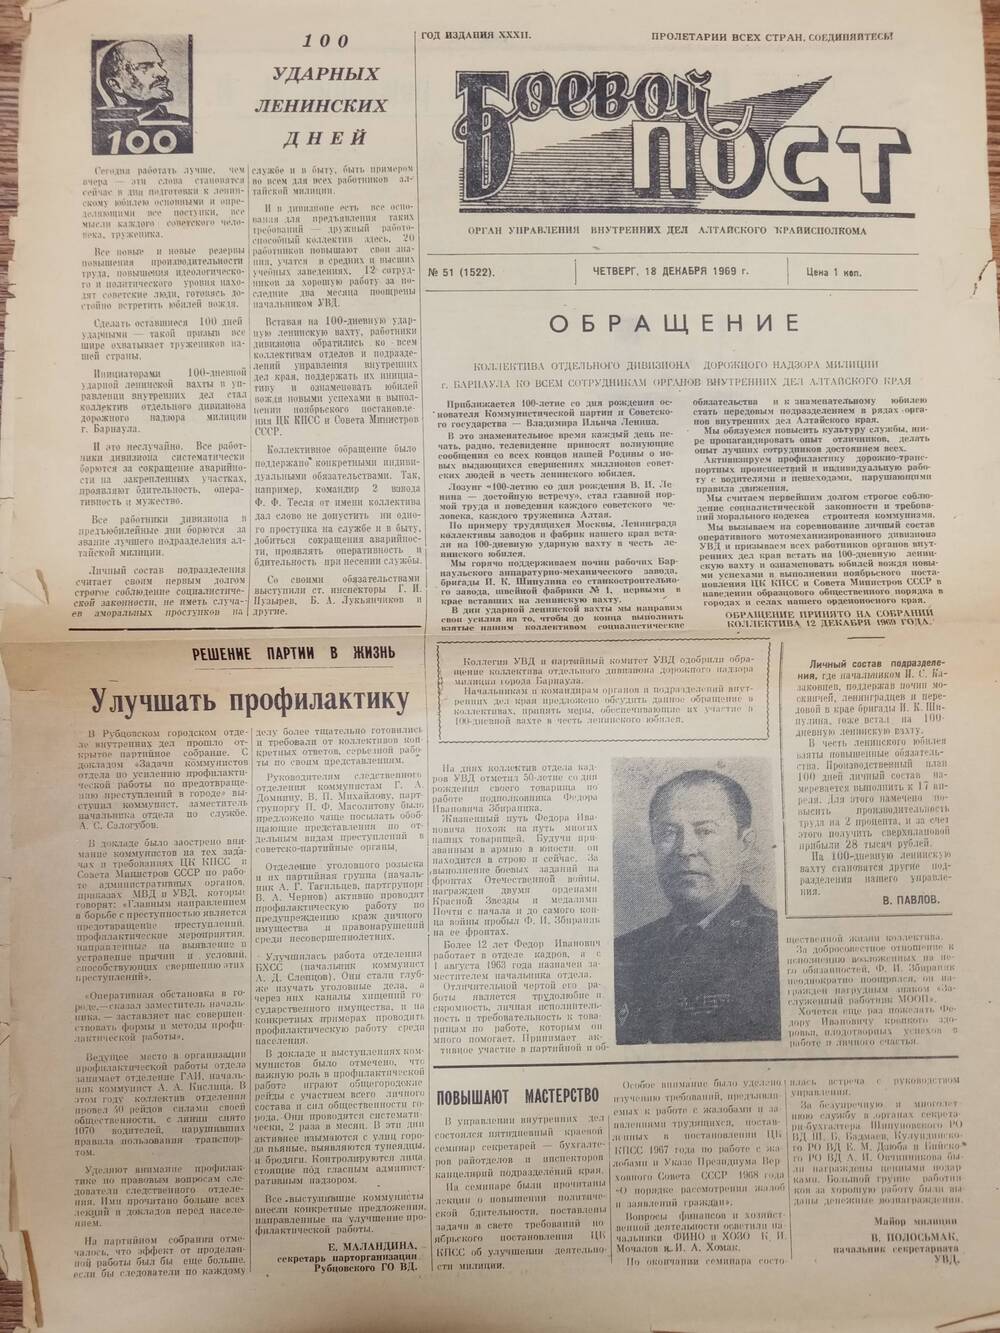 Газета Боевой постот 18 декабря 1969 года.